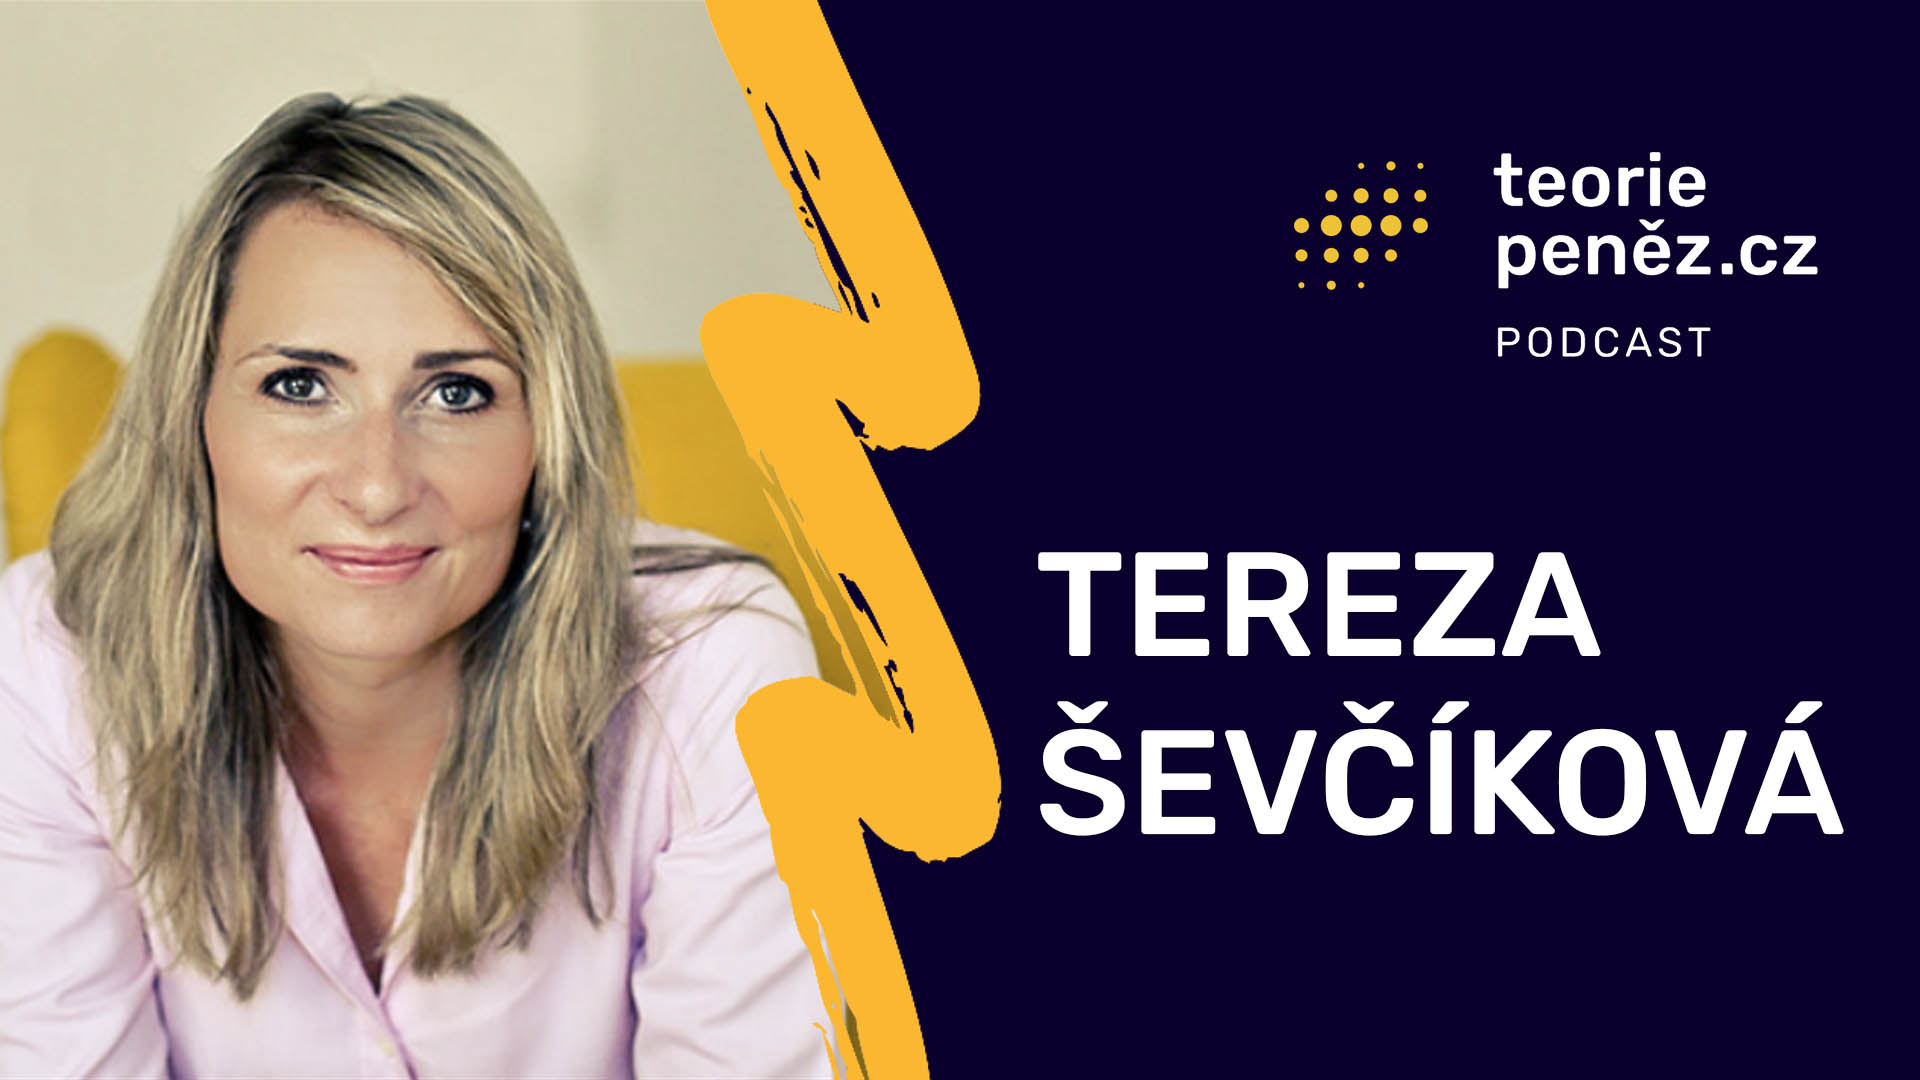 Tereza Ševčíková: Finance jsou důležité, veďme o nich ve vztahu debatu